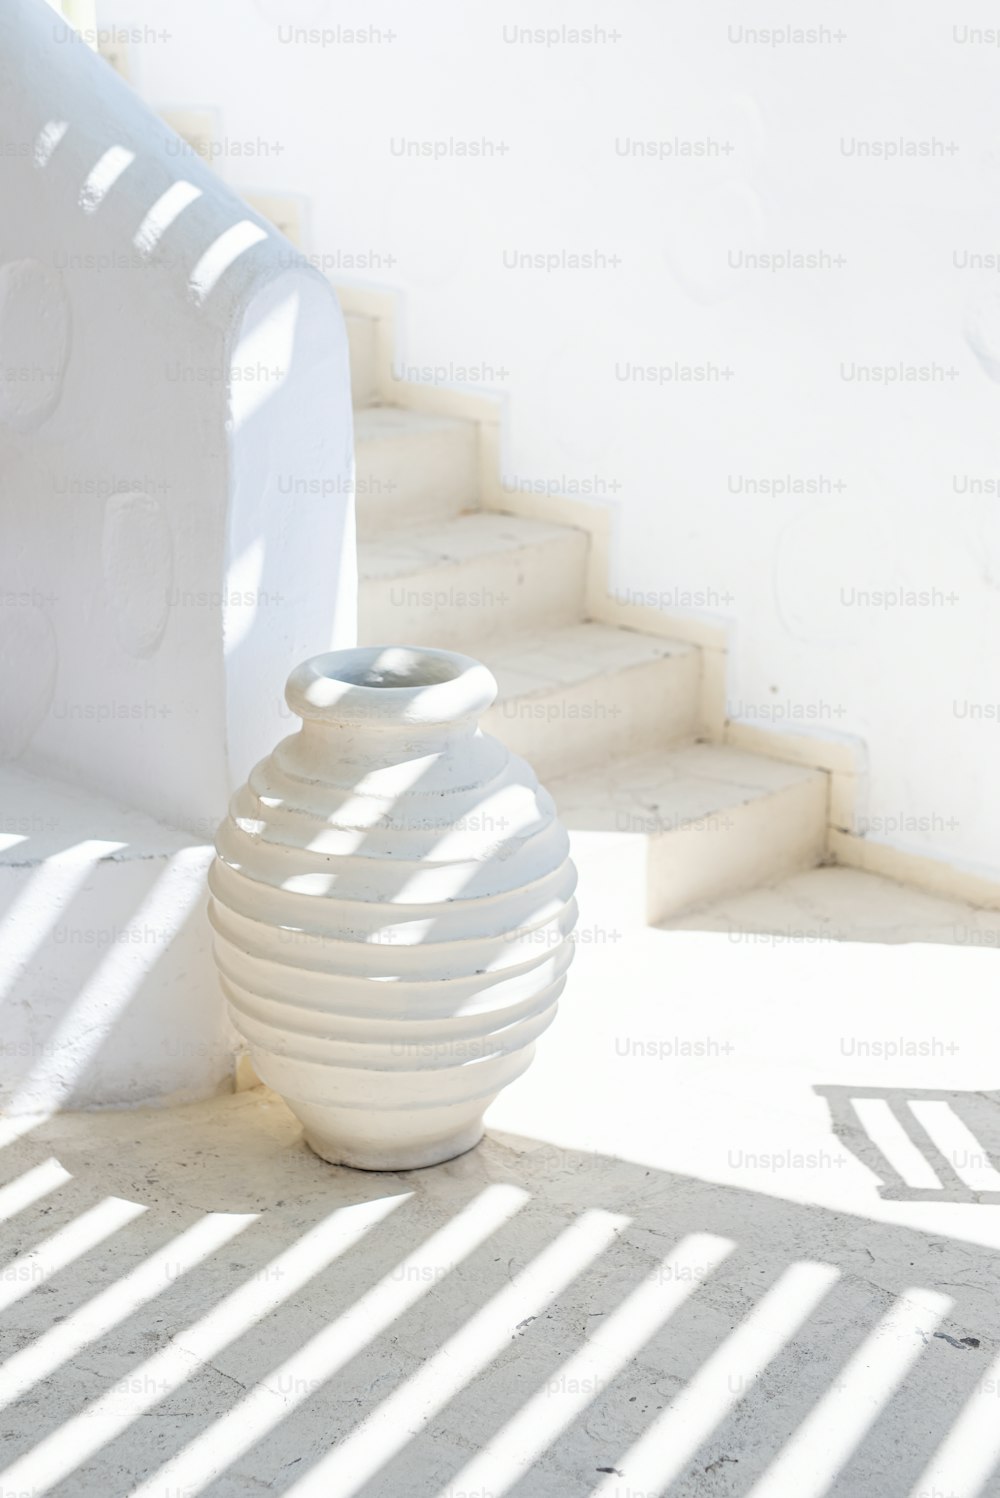 um vaso branco sentado no chão ao lado de algumas escadas